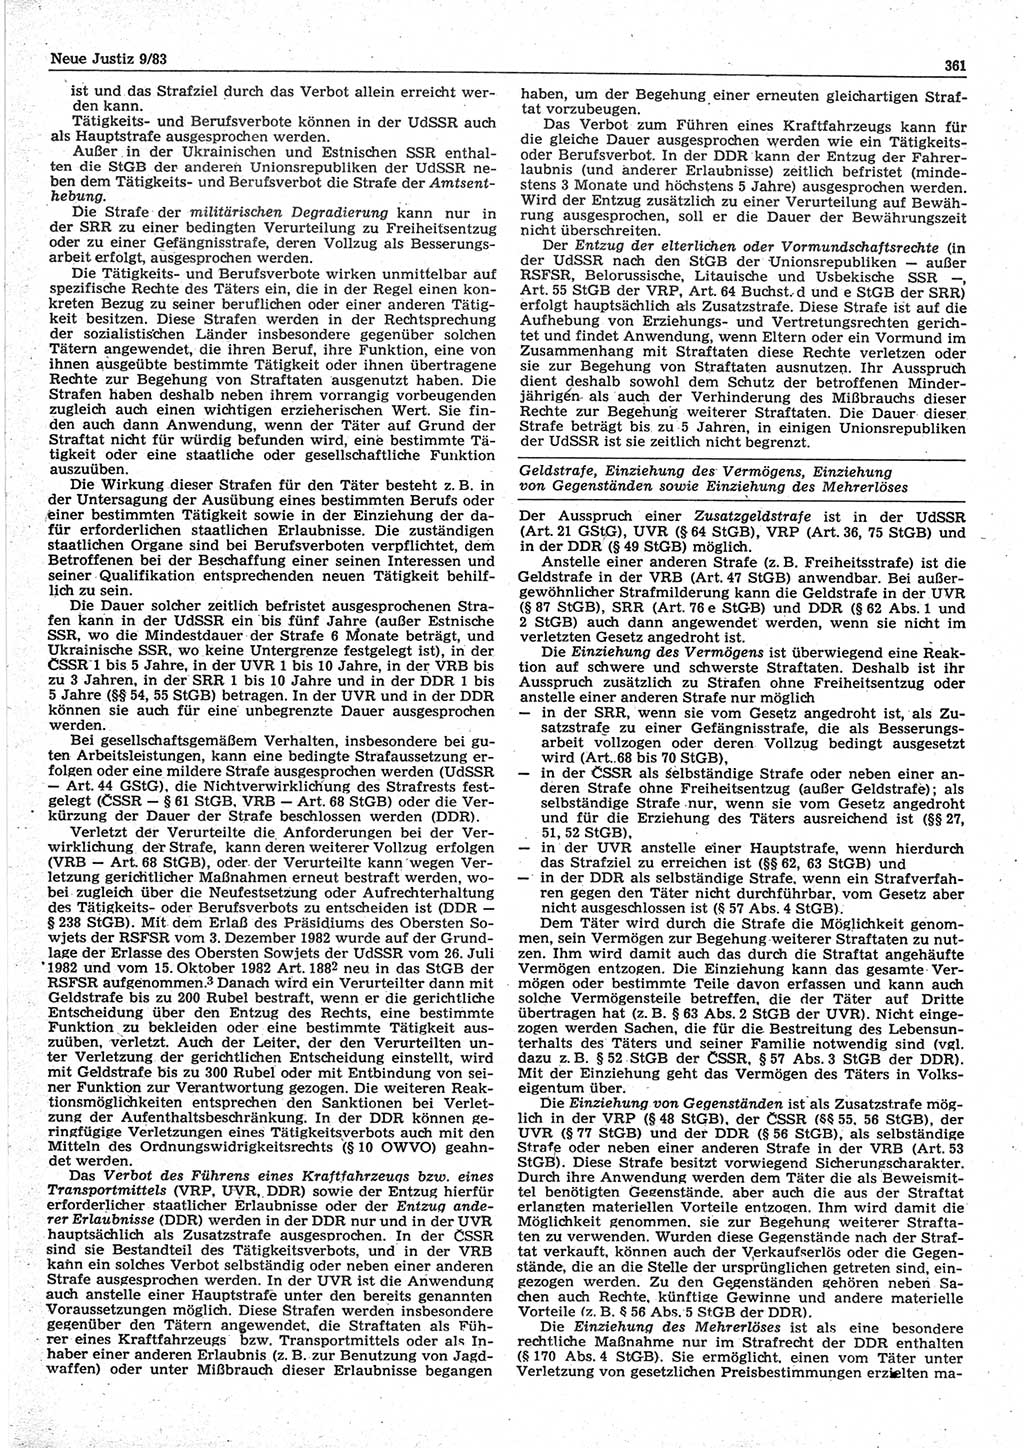 Neue Justiz (NJ), Zeitschrift für sozialistisches Recht und Gesetzlichkeit [Deutsche Demokratische Republik (DDR)], 37. Jahrgang 1983, Seite 361 (NJ DDR 1983, S. 361)